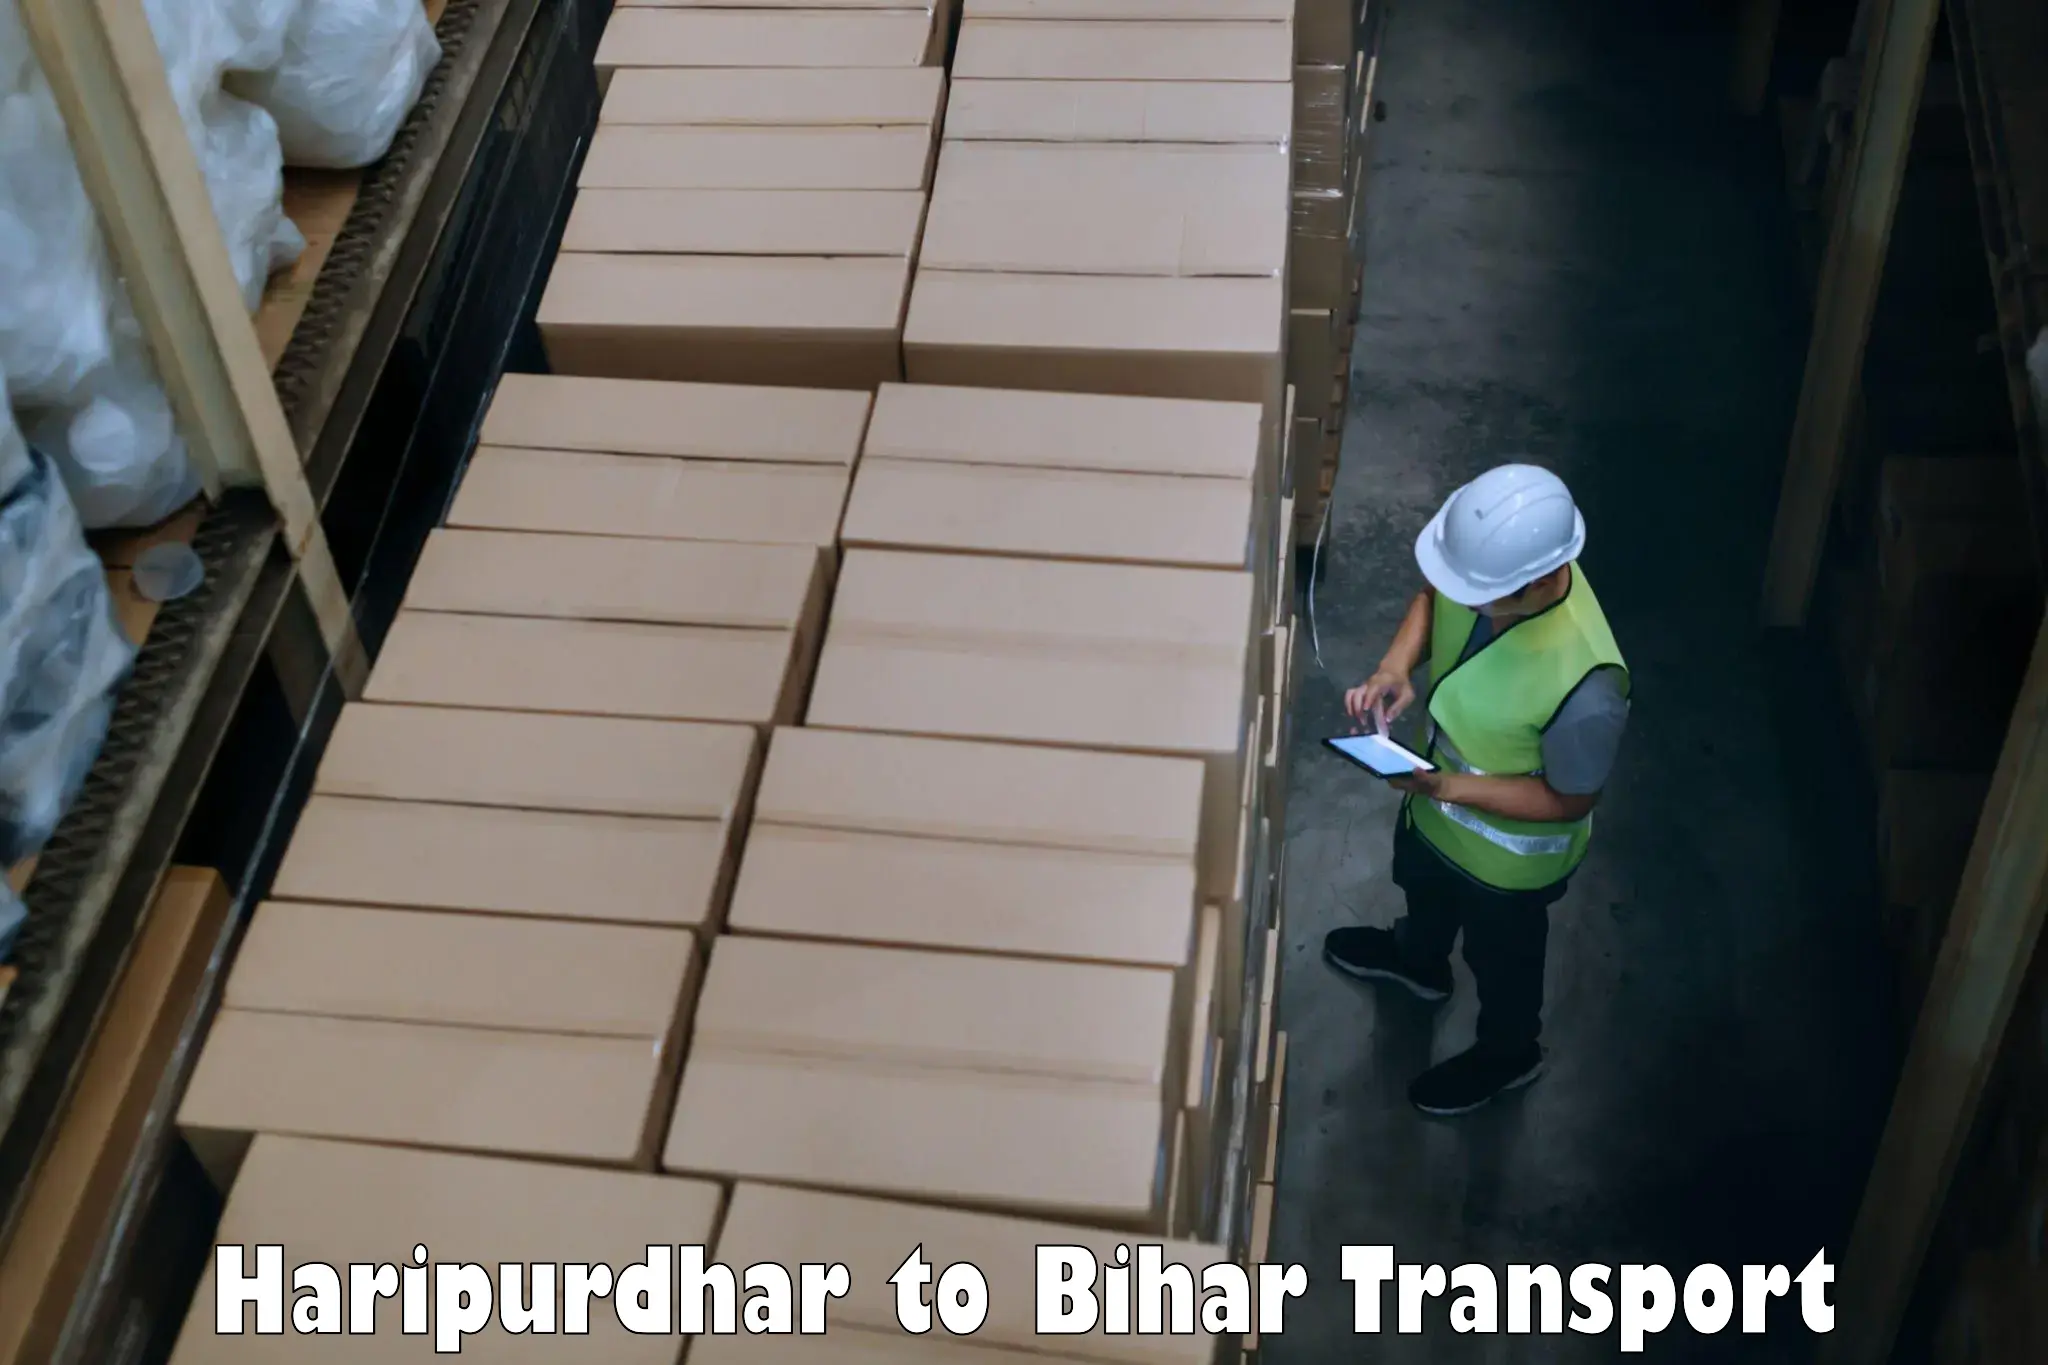 Express transport services Haripurdhar to Phulparas